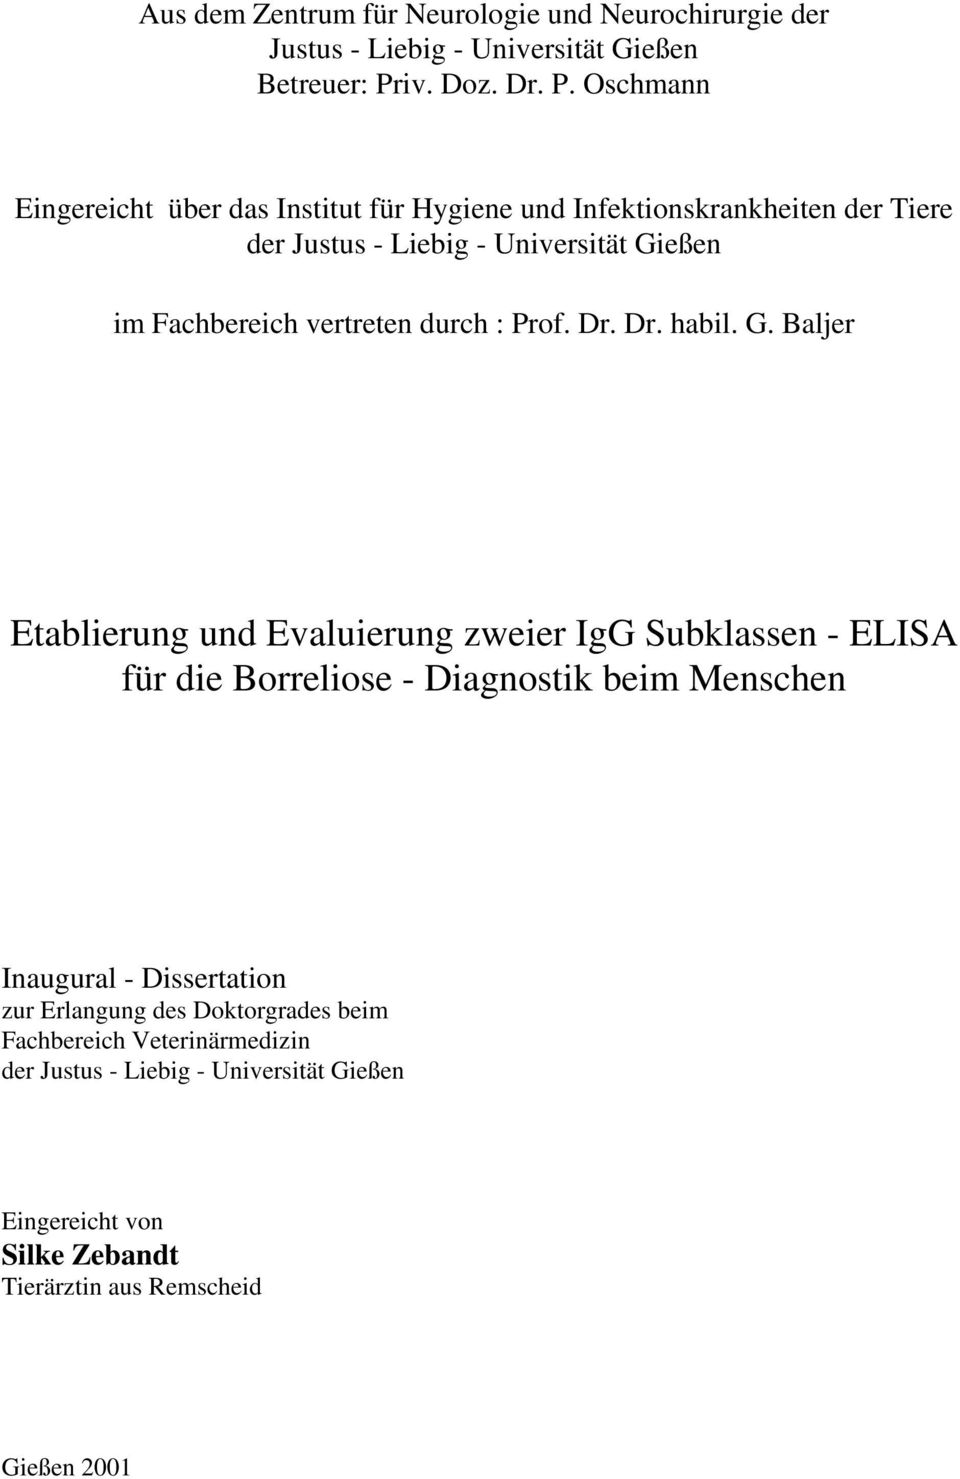 Oschmann Eingereicht über das Institut für Hygiene und Infektionskrankheiten der Tiere der Justus - Liebig - Universität Gießen im Fachbereich vertreten